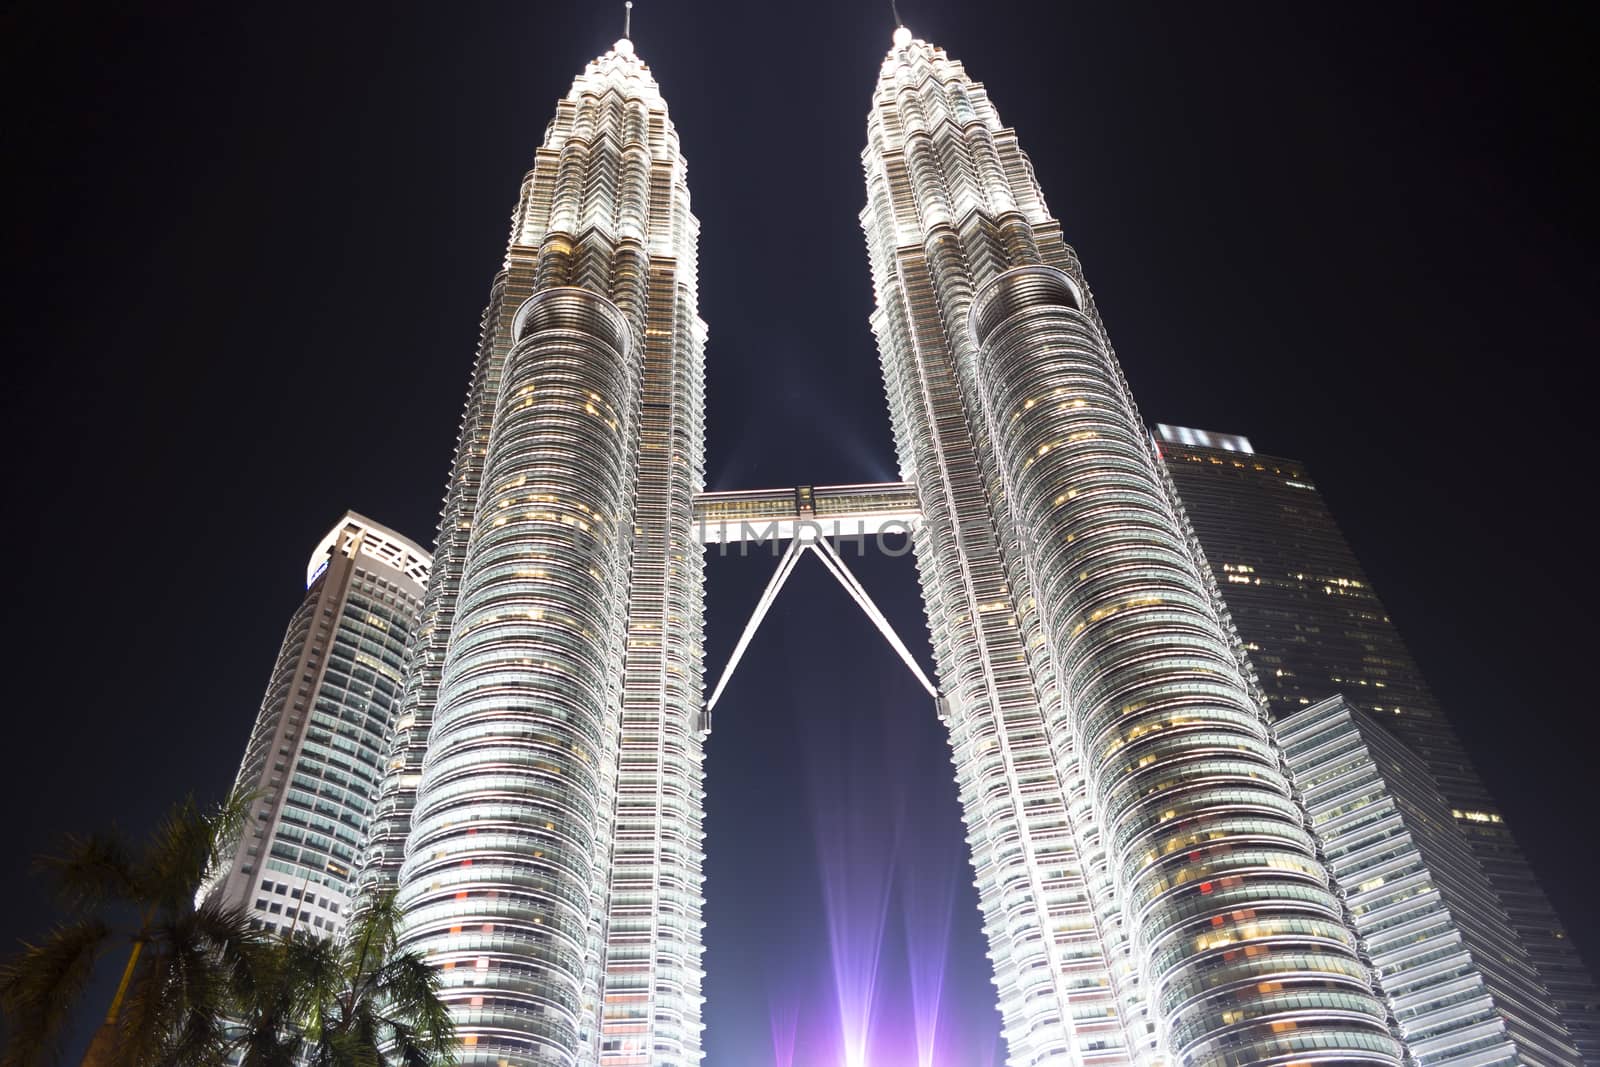 Petronas Twin Towers in Kuala Lumpur. EDITORIAL
Kuala Lumpur, Malaysia, June 17 2014.